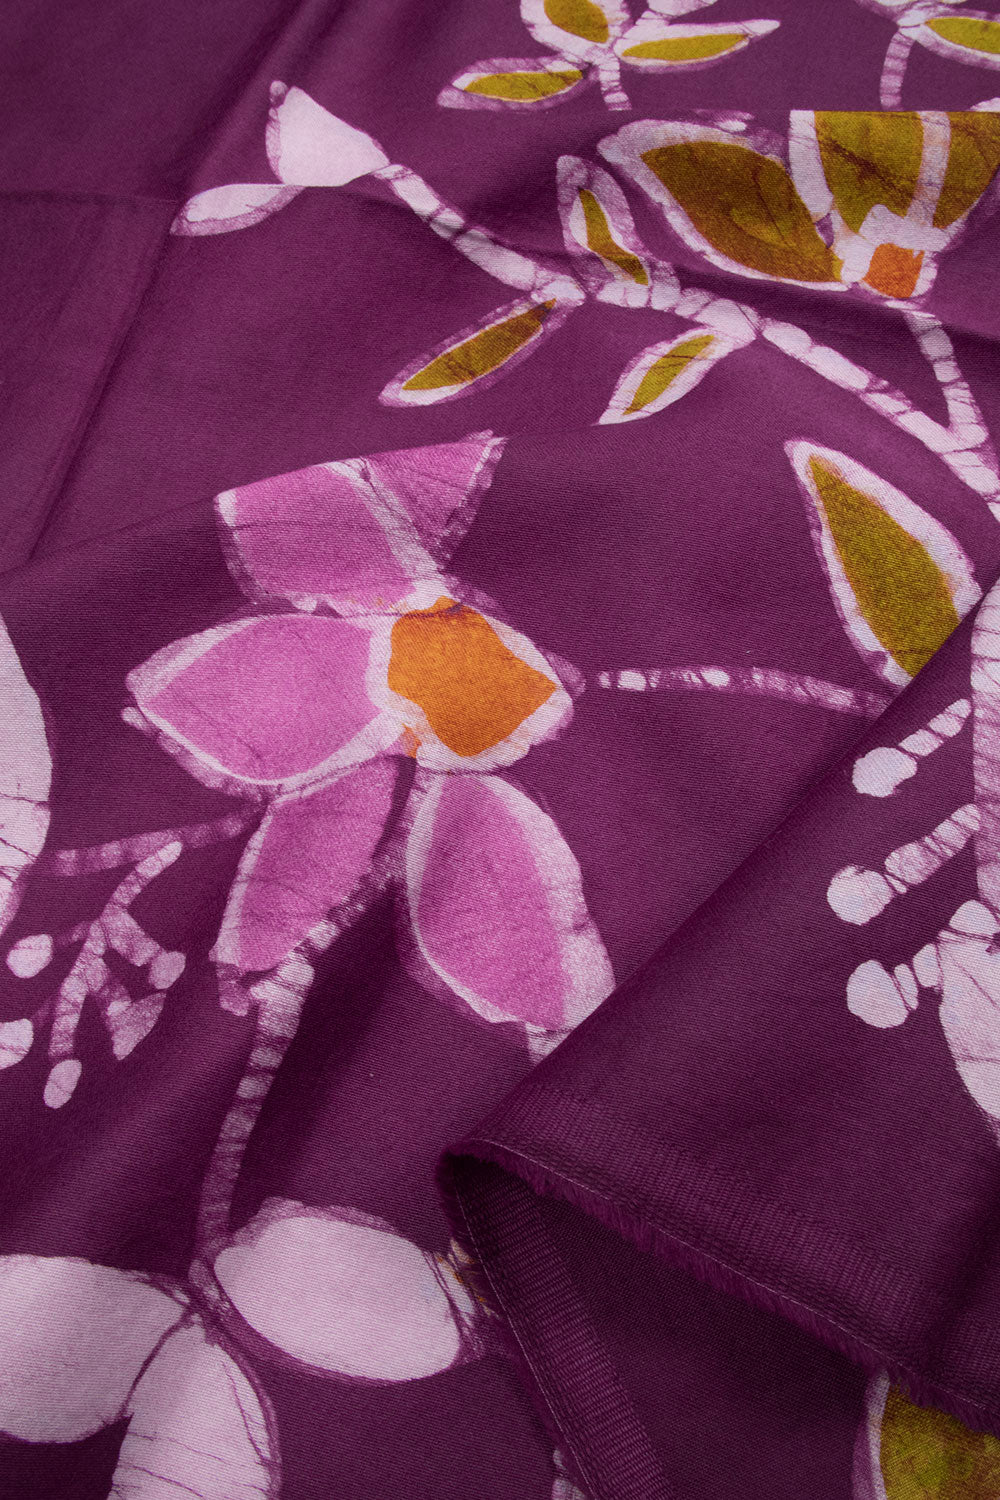 Batik Printed Cotton Blouse Material - 10063019